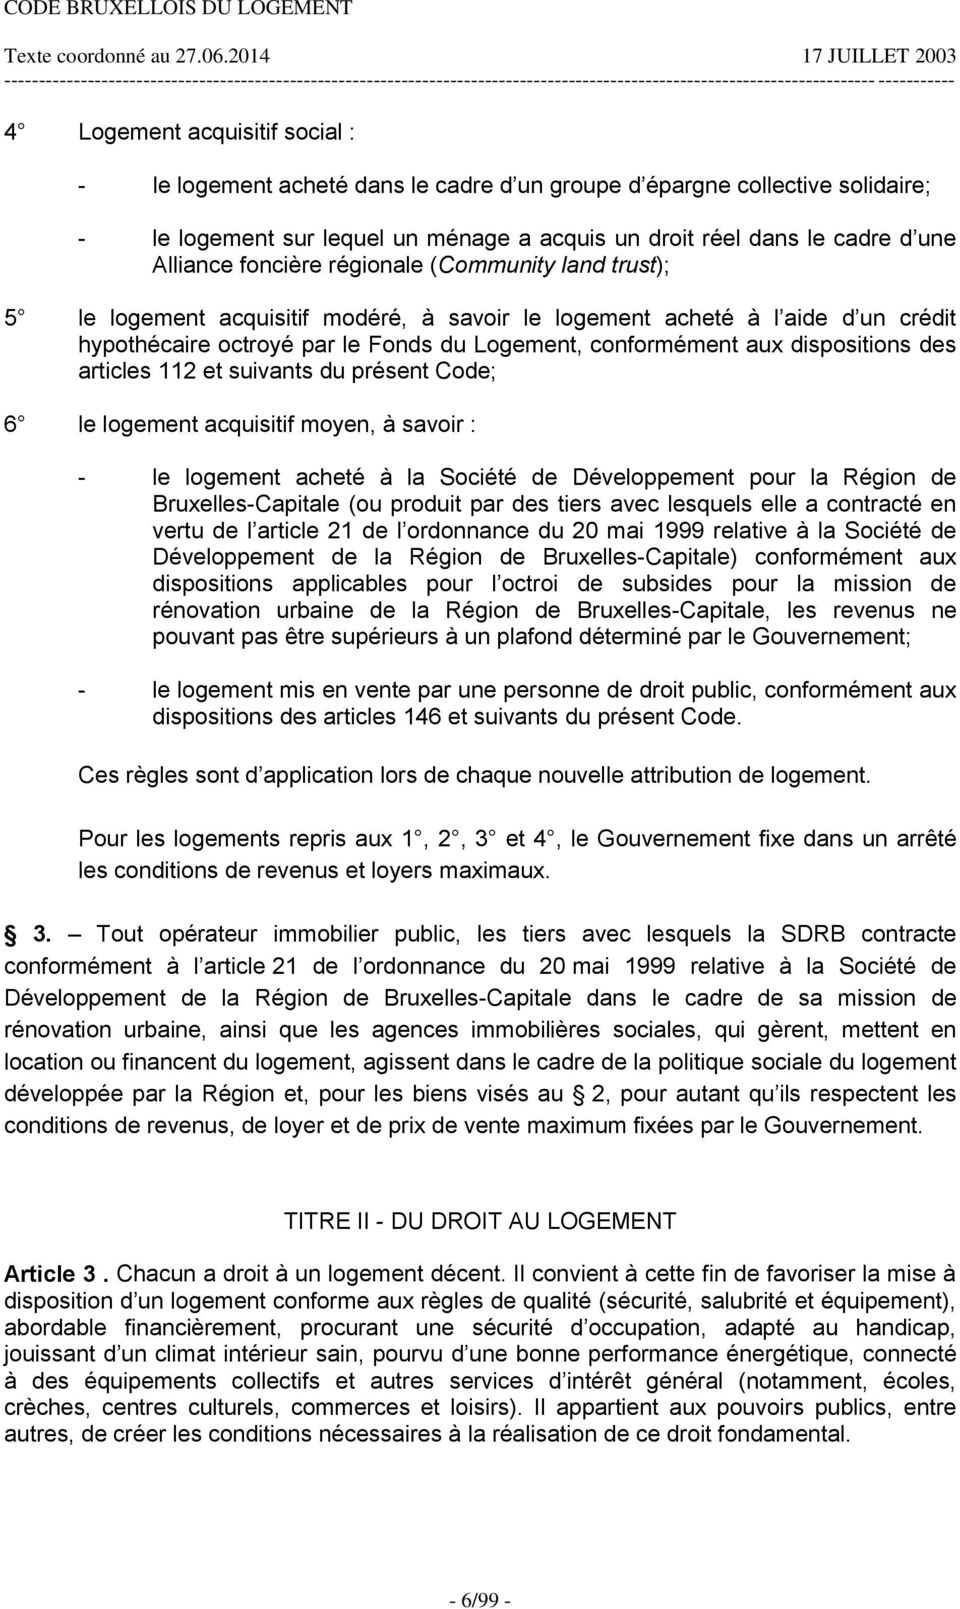 dispositions des articles 112 et suivants du présent Code; 6 le logement acquisitif moyen, à savoir : - le logement acheté à la Société de Développement pour la Région de Bruxelles-Capitale (ou